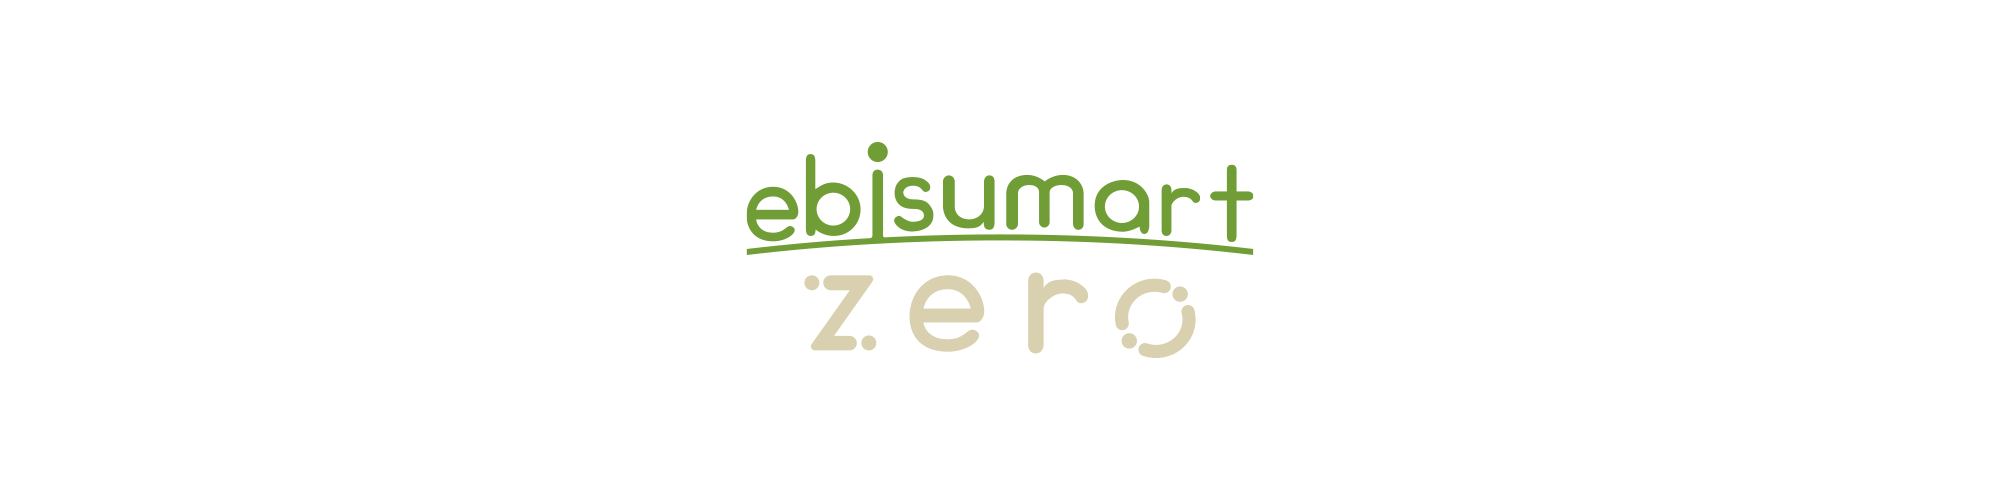 新サービス「ebisumart zero」を提供開始  ~ebisumartの最新性と安心性はそのままに、スマートかつスピーディーにECサイト構築が可能~